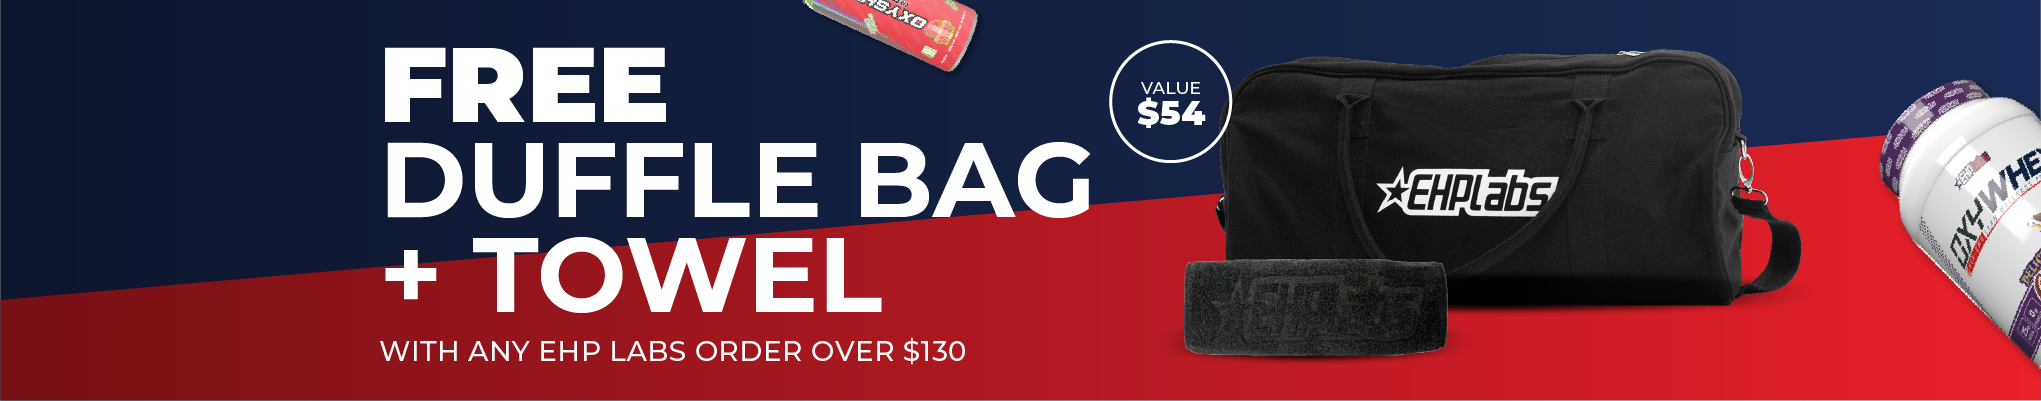 EHP Labs Online Deal - Free Duffle Bag + Towel on orders over $130